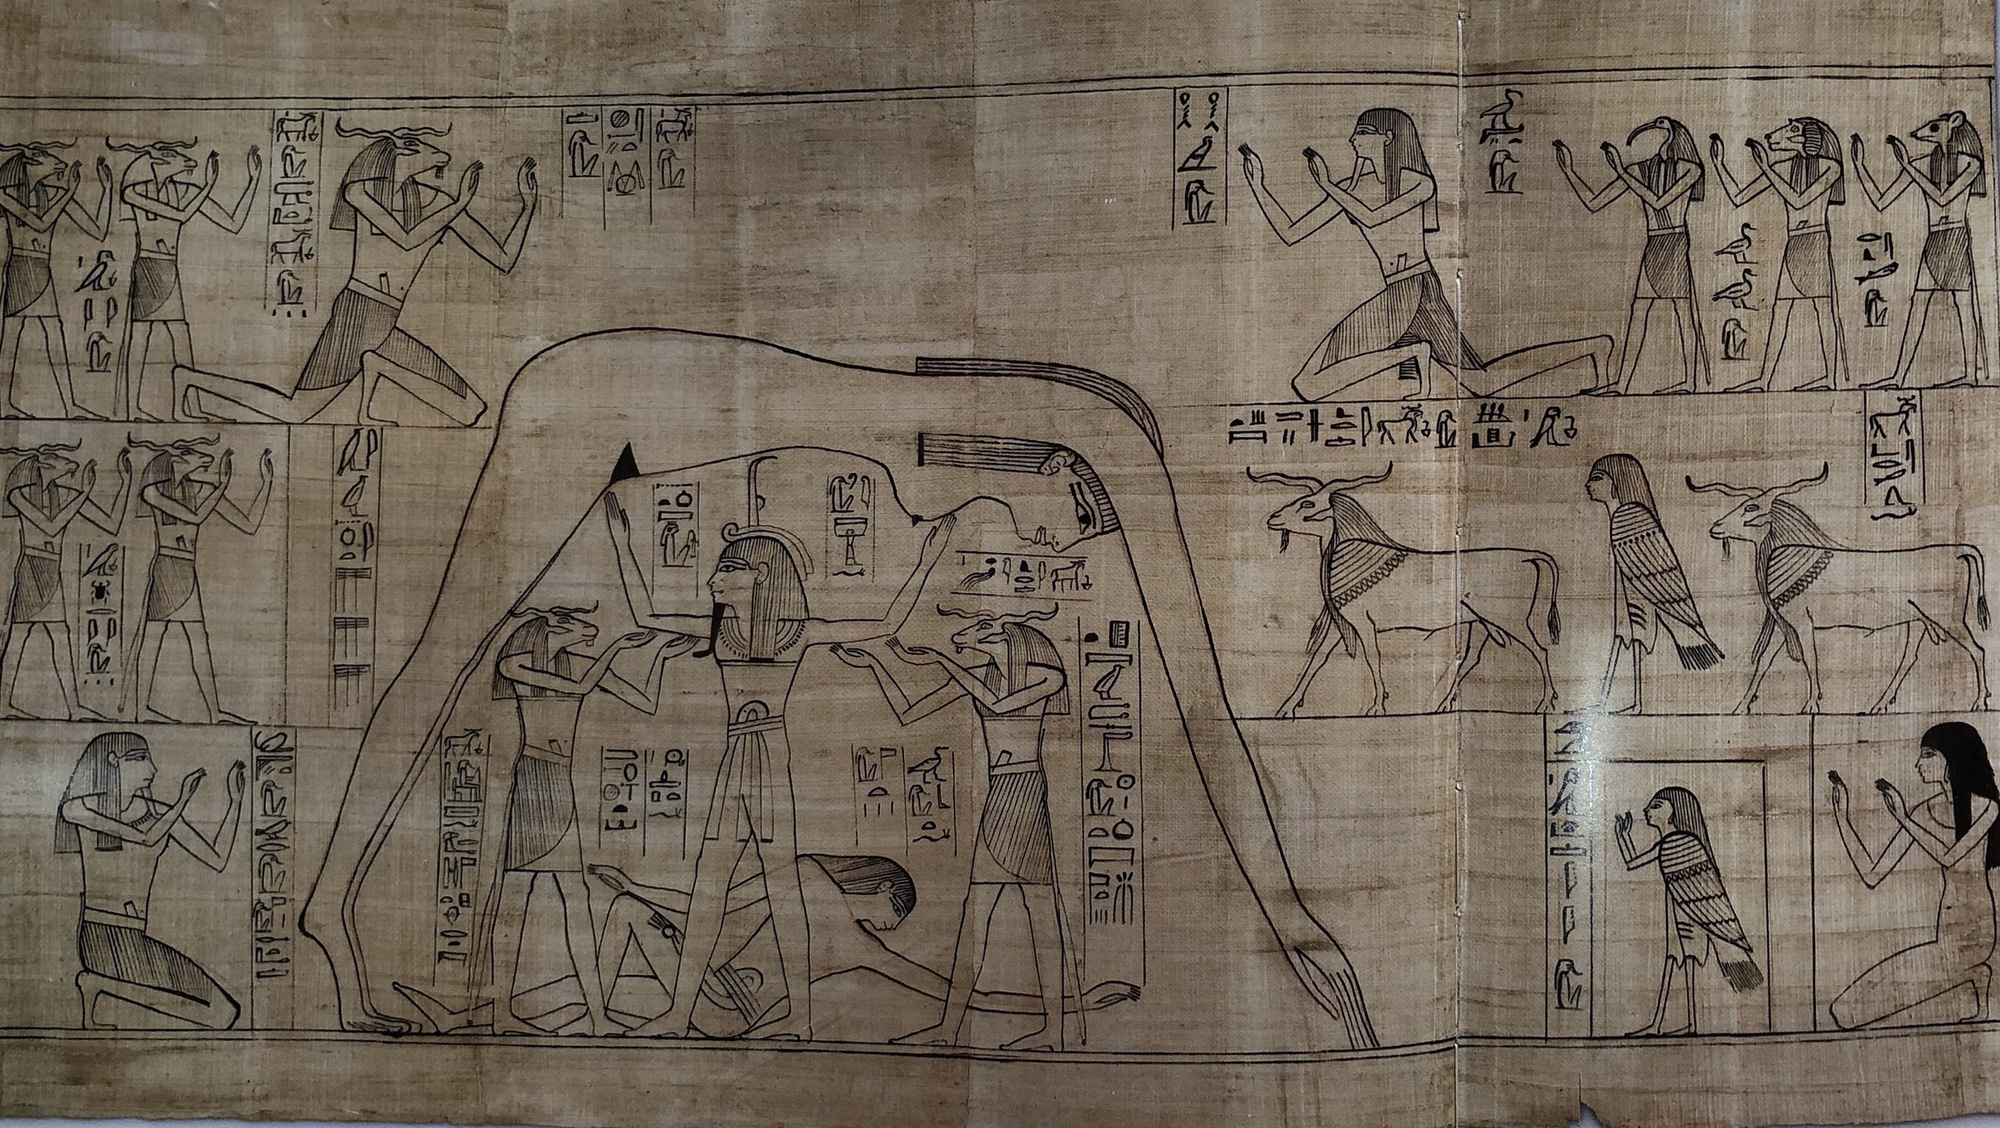 Tử thư - Cuốn sách bí ẩn chôn trong lăng mộ người Ai Cập - Ảnh 2.